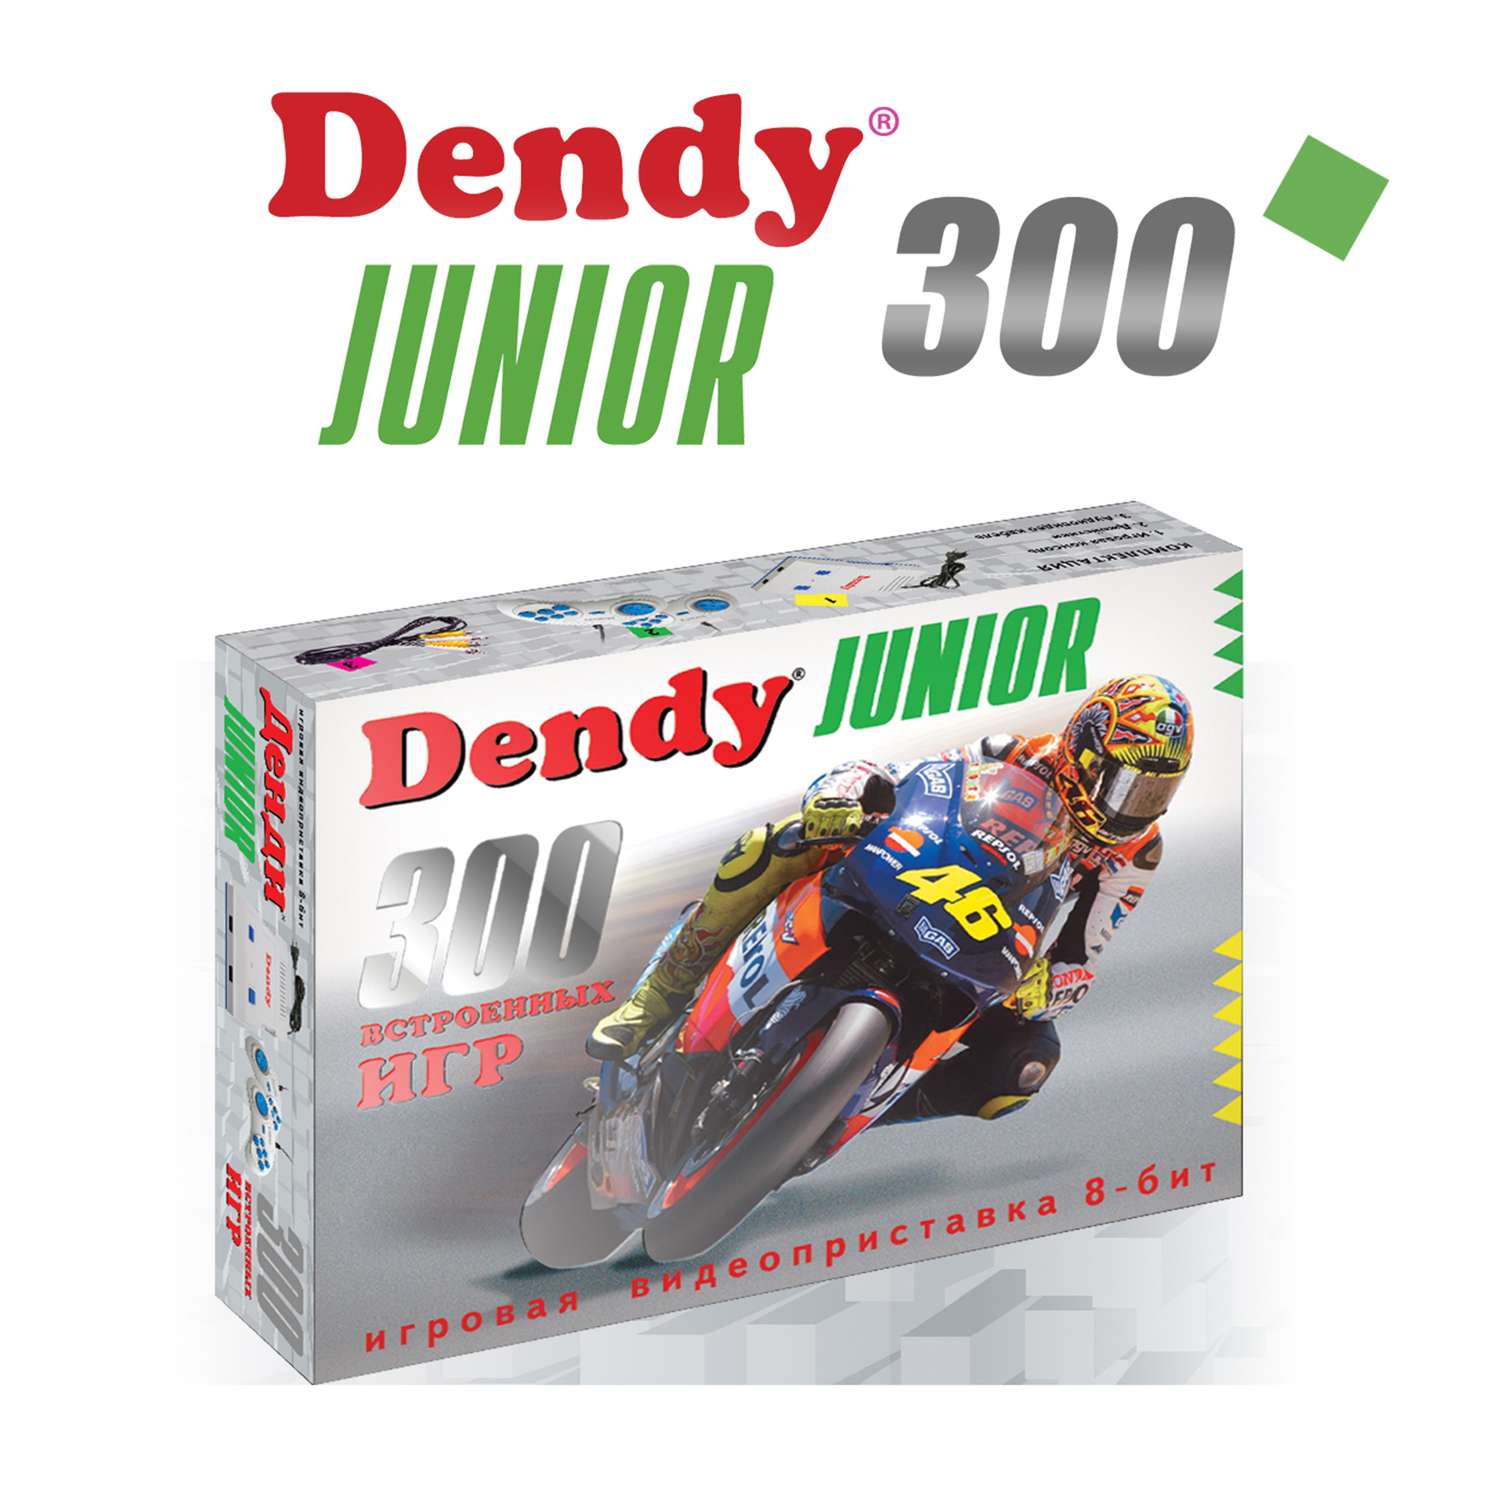 Игровая приставка Dendy Junior 300 встроенных игр (8-бит) - фото 1